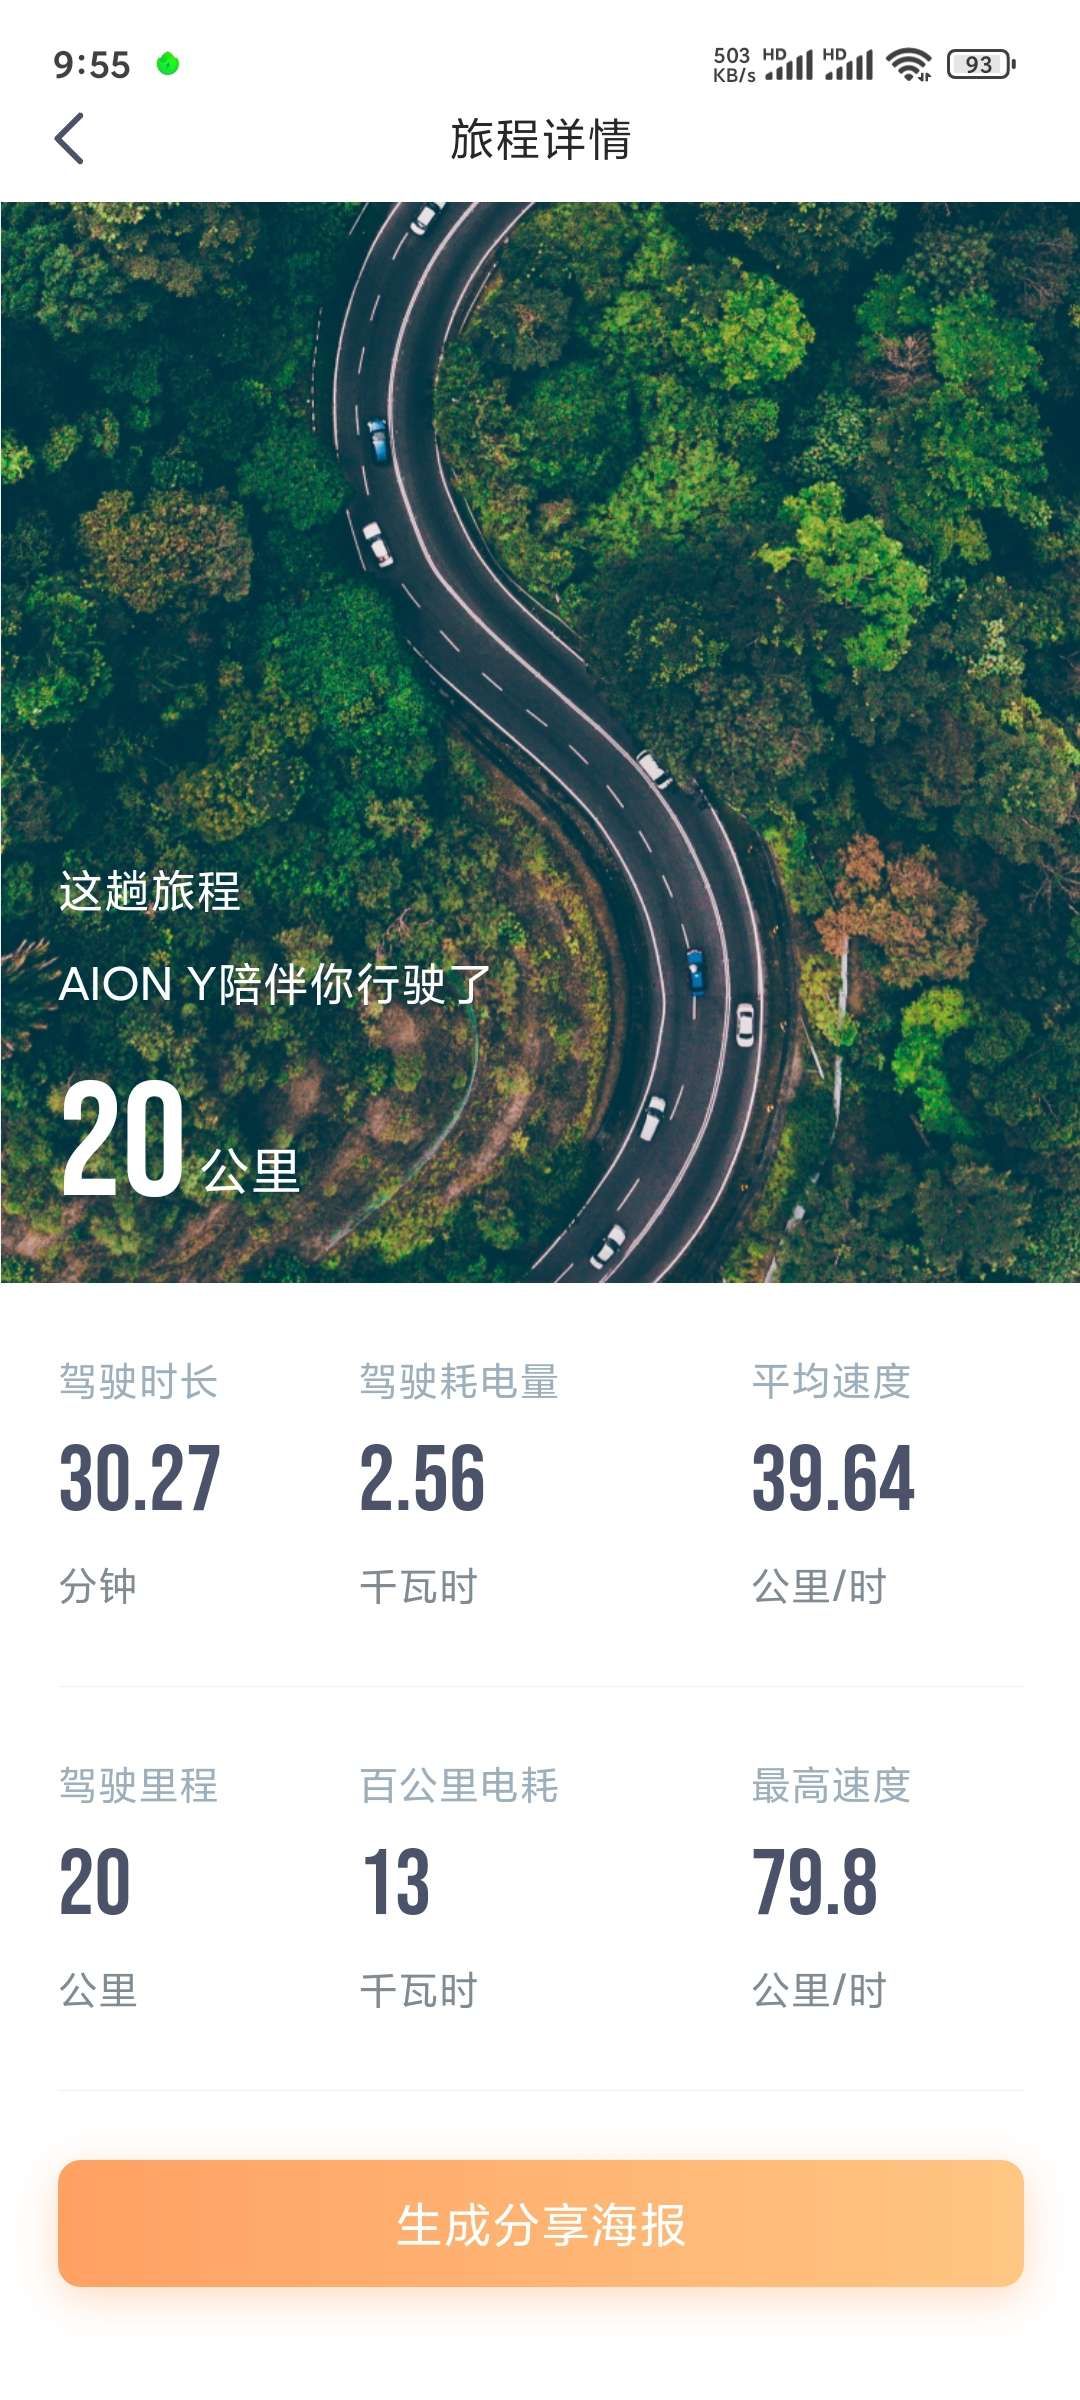 -城市：北京
-温度：23度 
-车型型号：埃安y 70 
-能耗表现：  13kWh 
-其他备注：城市路，时速50左右，动能回收高
标准春天电耗